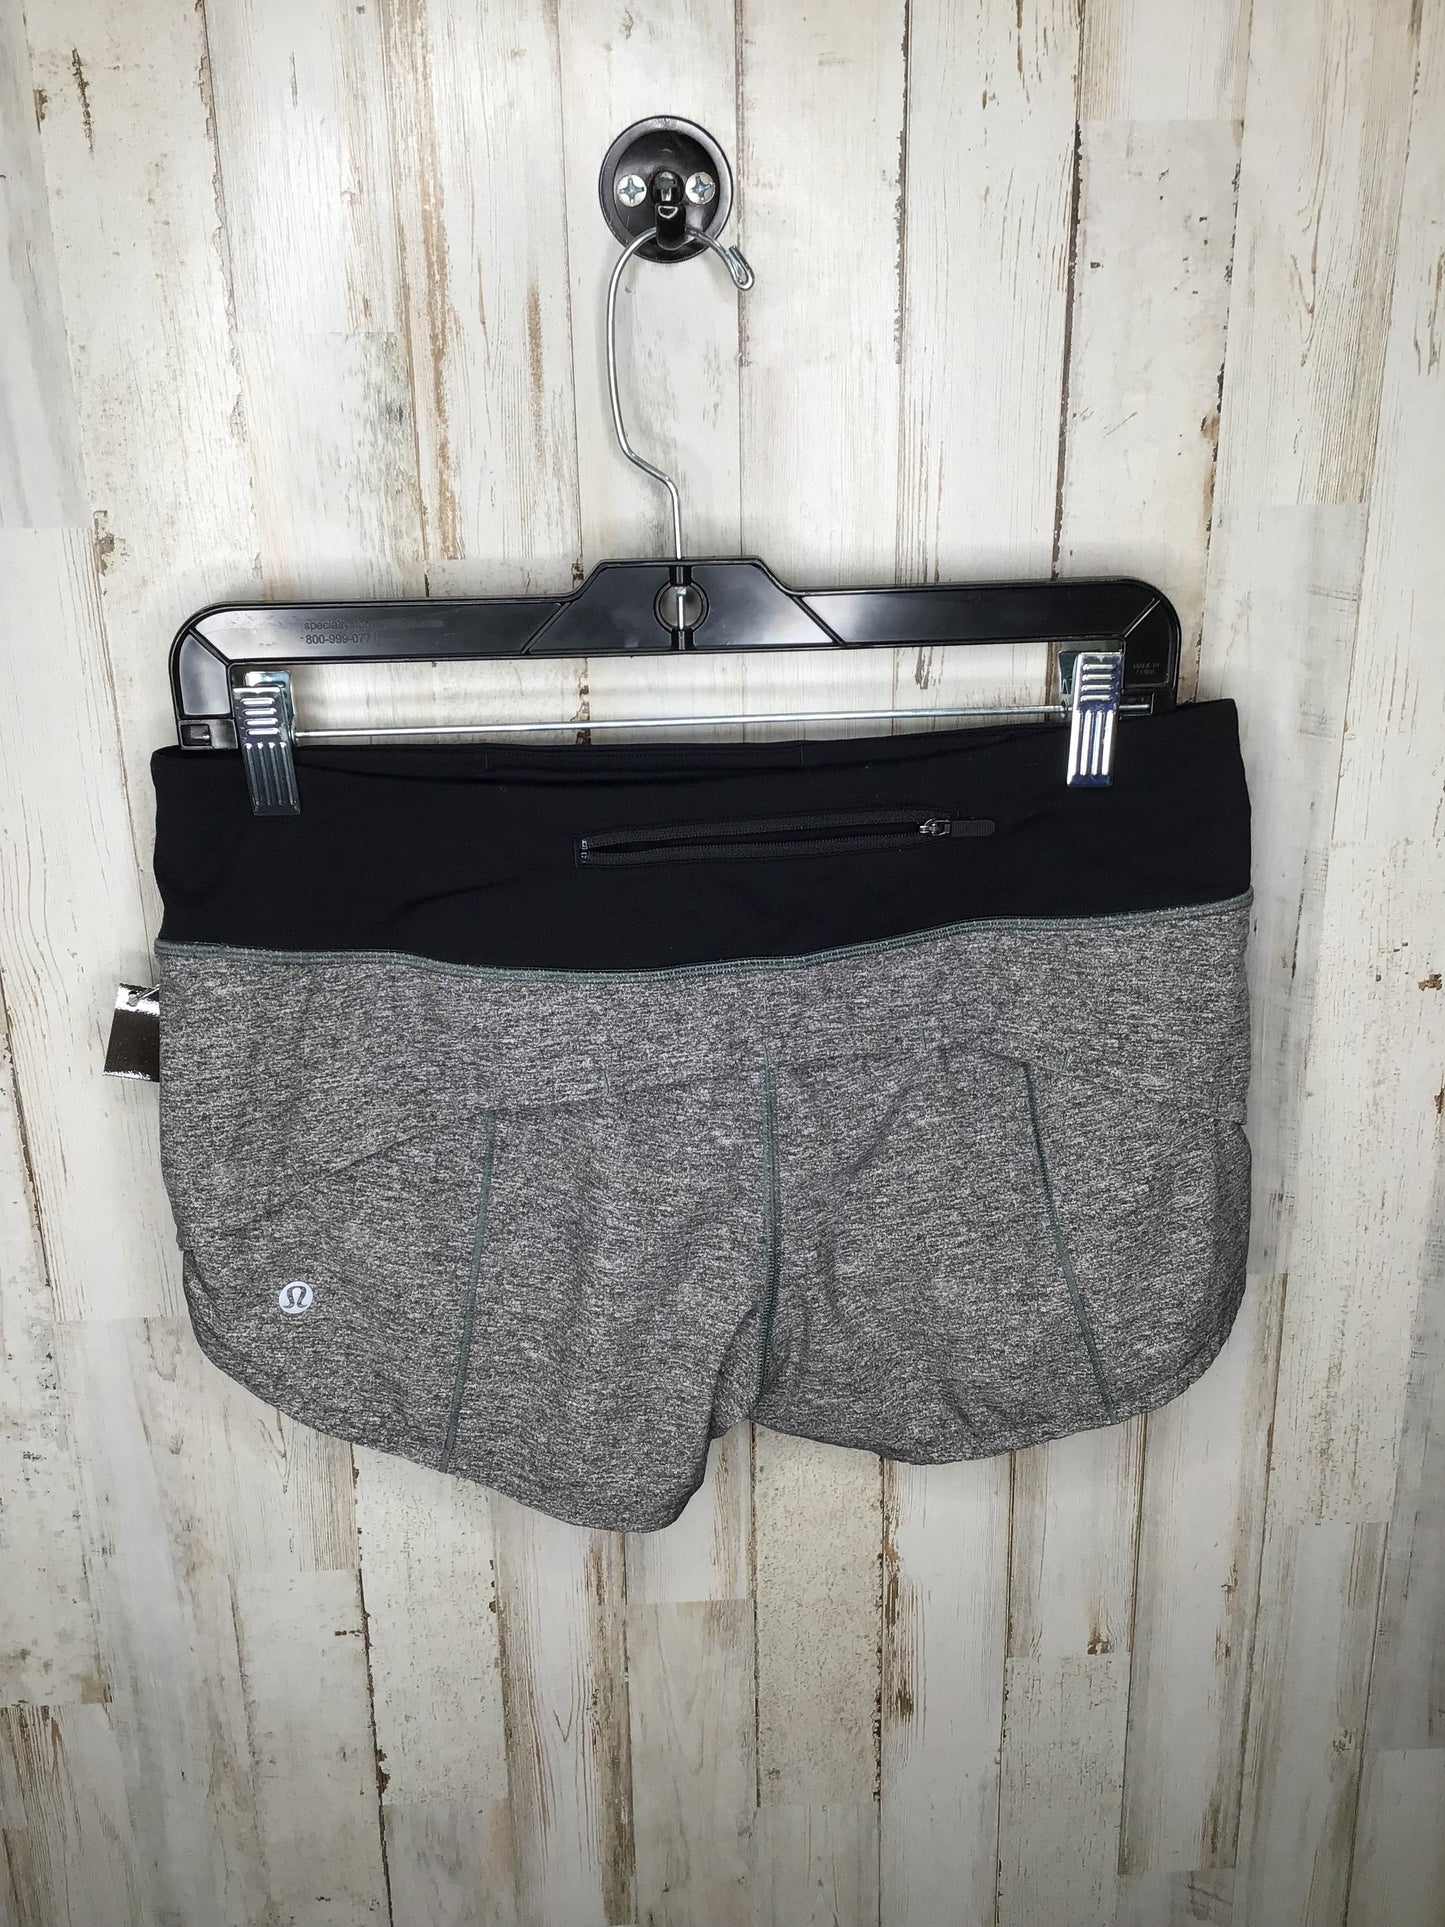 Grey Athletic Shorts Lululemon, Size 6